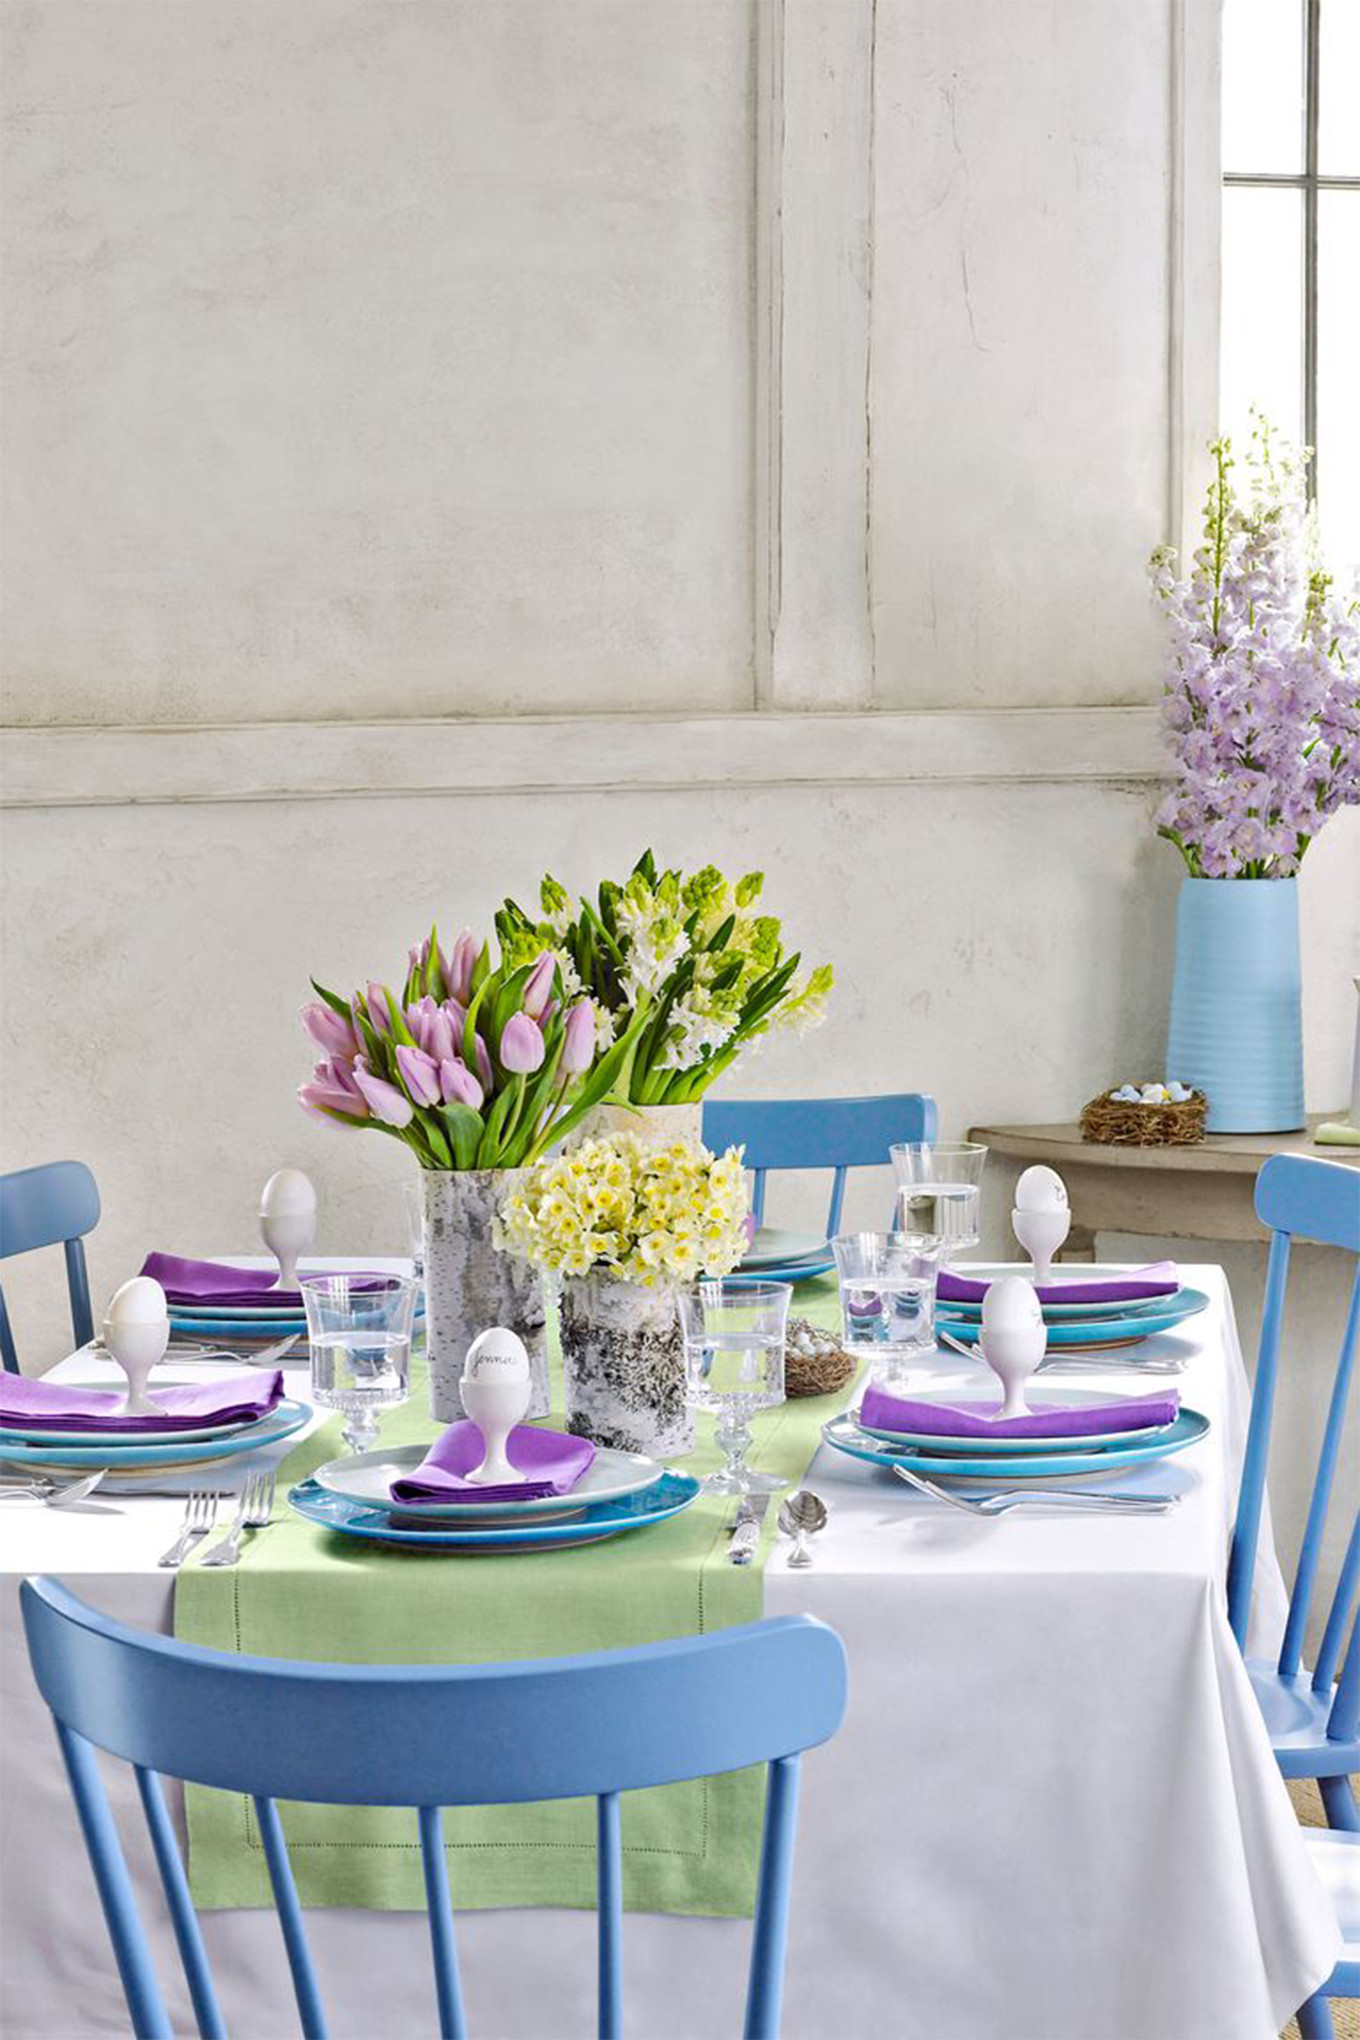 Easter Dinner Table Settings
 ENCHANTING EASTER TABLE SETTINGS INSPIRED BY SPRING